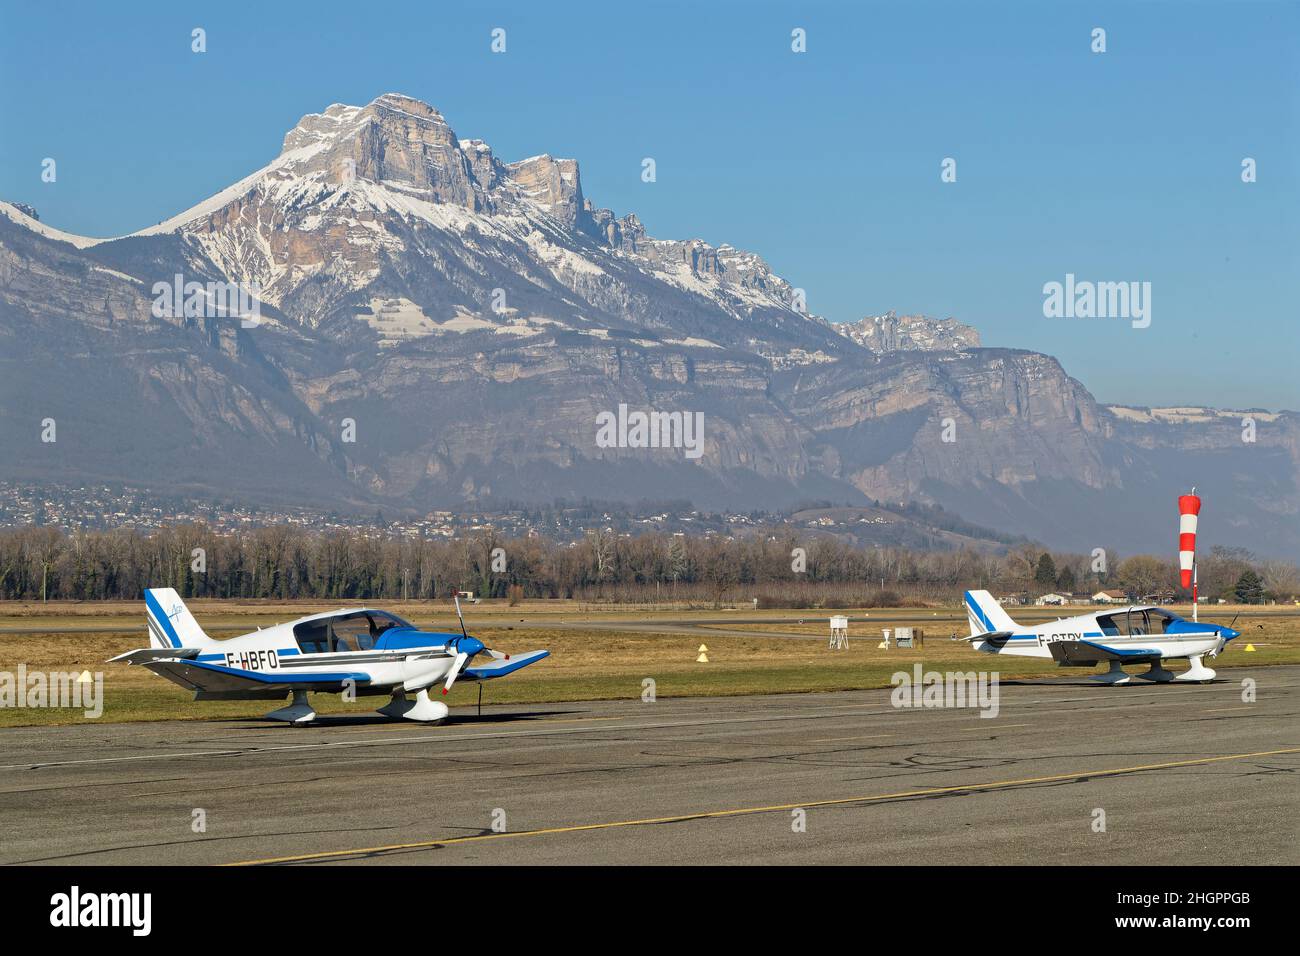 LE VERSOUD, FRANCE, 14 janvier 2022 : petits avions dans l'aérodrome de Grenoble-le Versoud avec la chaîne de montagne Chartreuse en arrière-plan Banque D'Images